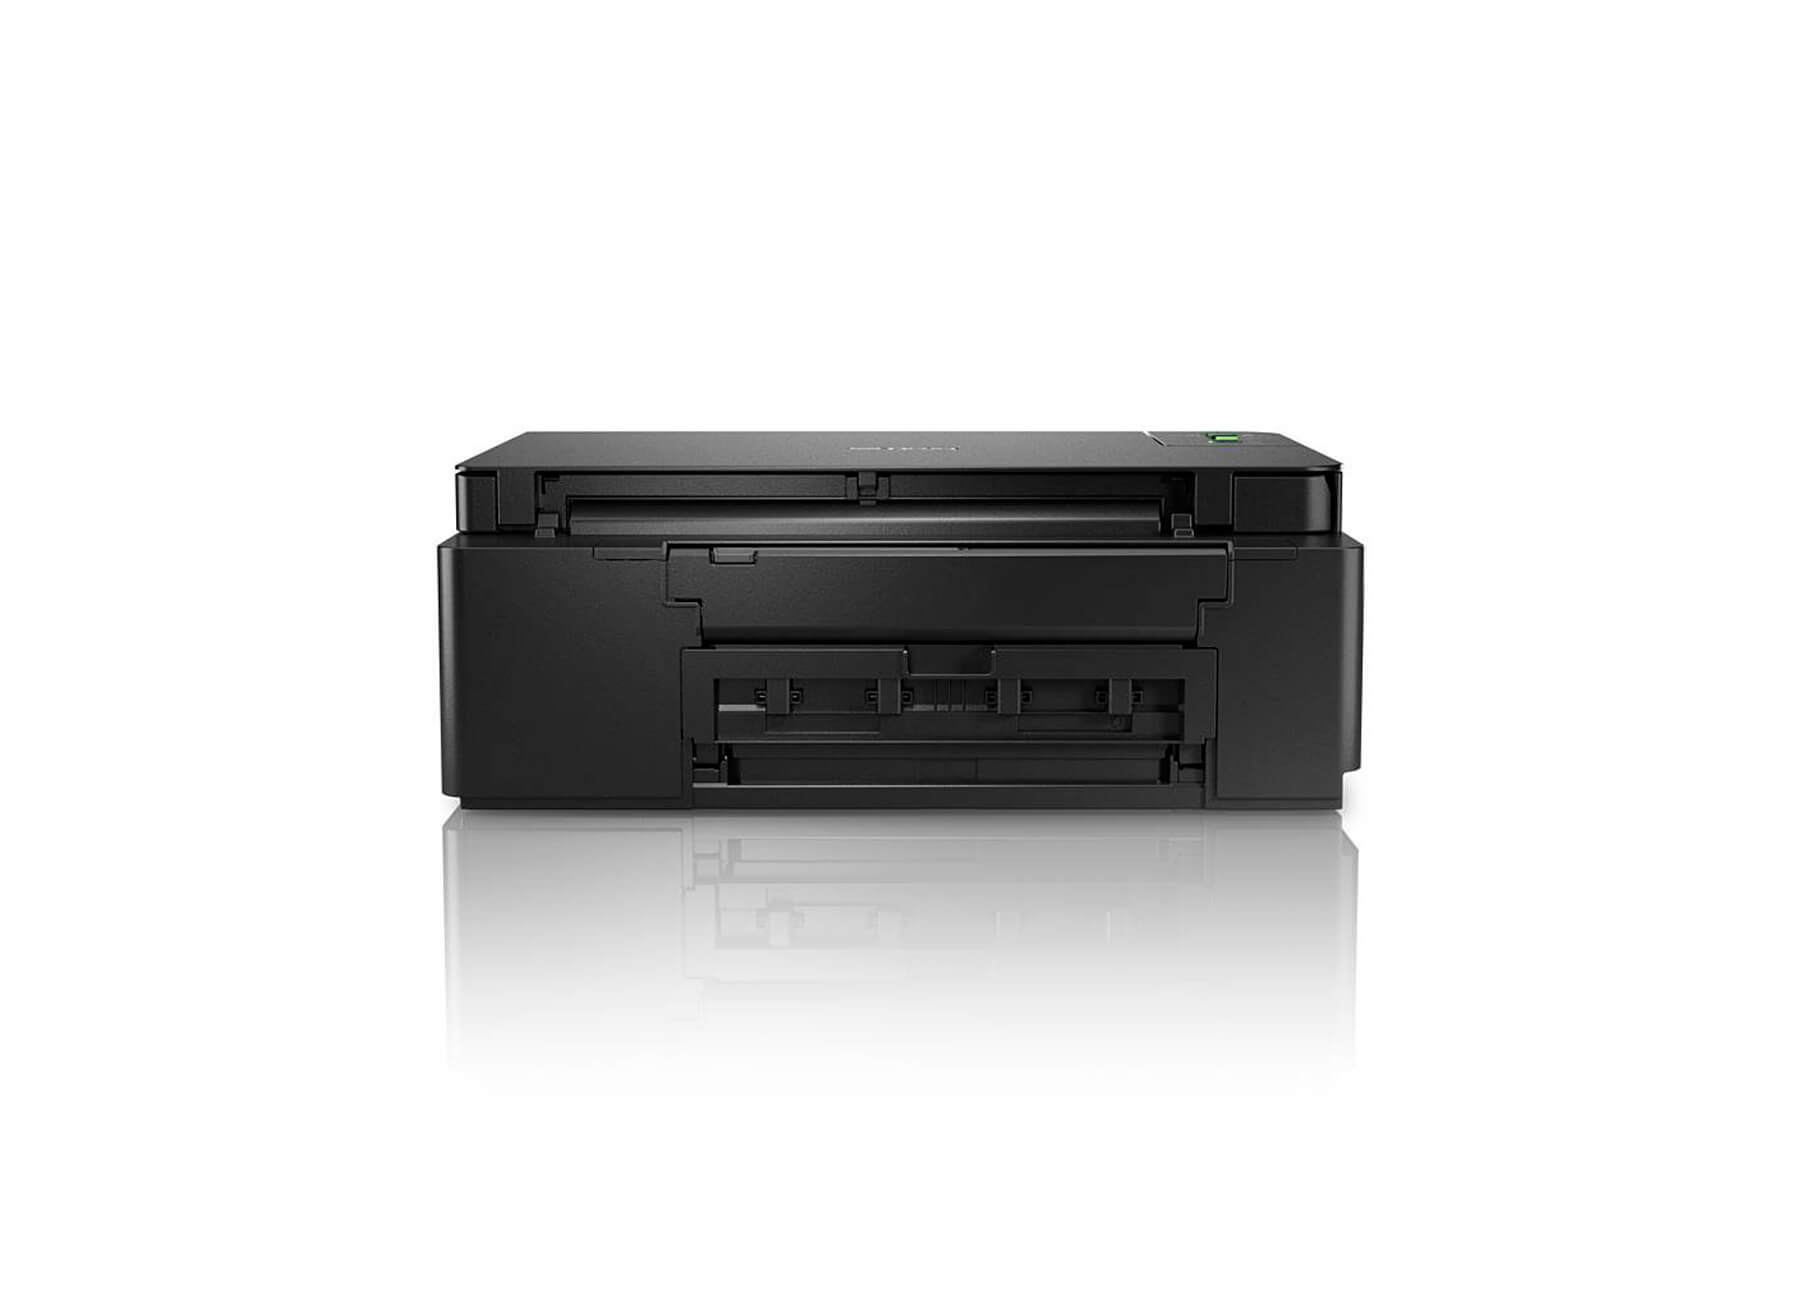 Impresora Multifunción Brother DCP-T420W